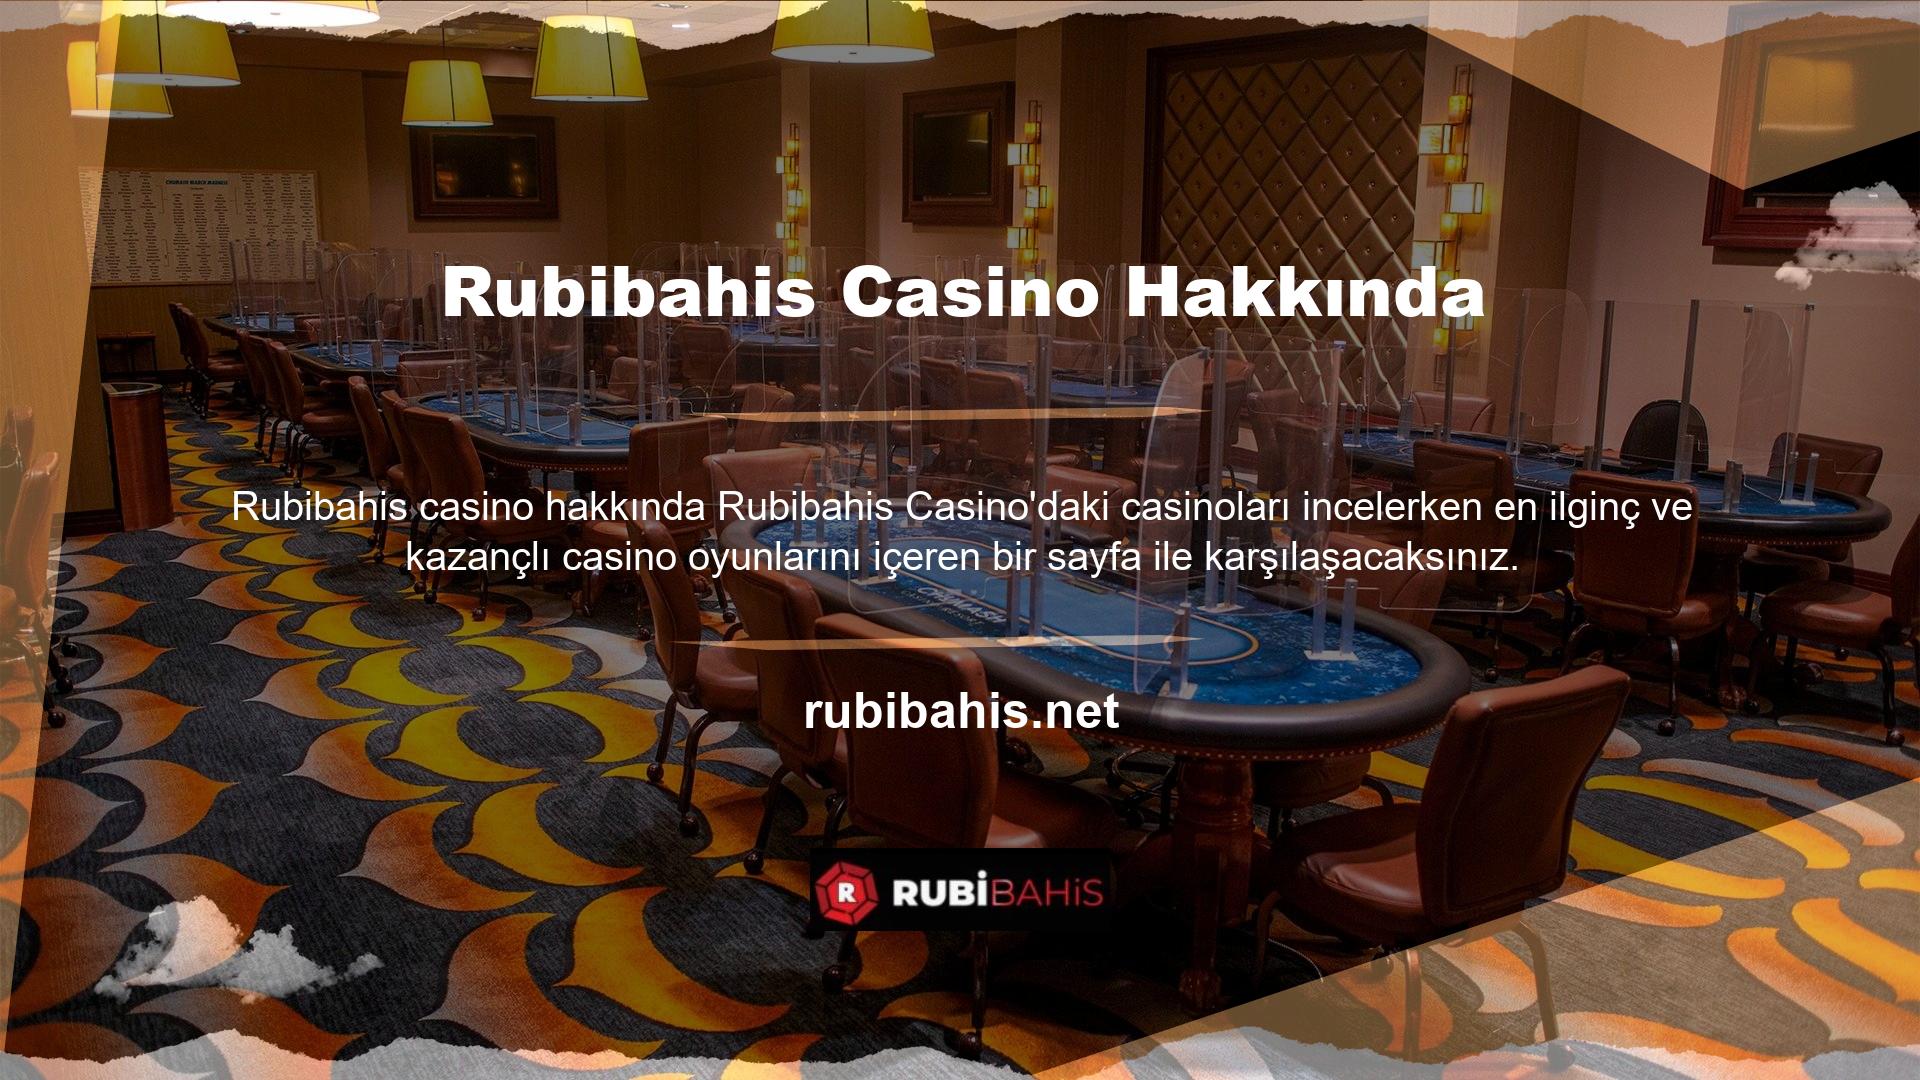 Rubibahis Casino dünyasında sizi neler bekliyor Rubibahis farklı kategorideki en saygın canlı casino ve oyunları oynayarak daha fazla kazanın, hızlı ve sorunsuz ödeme alın